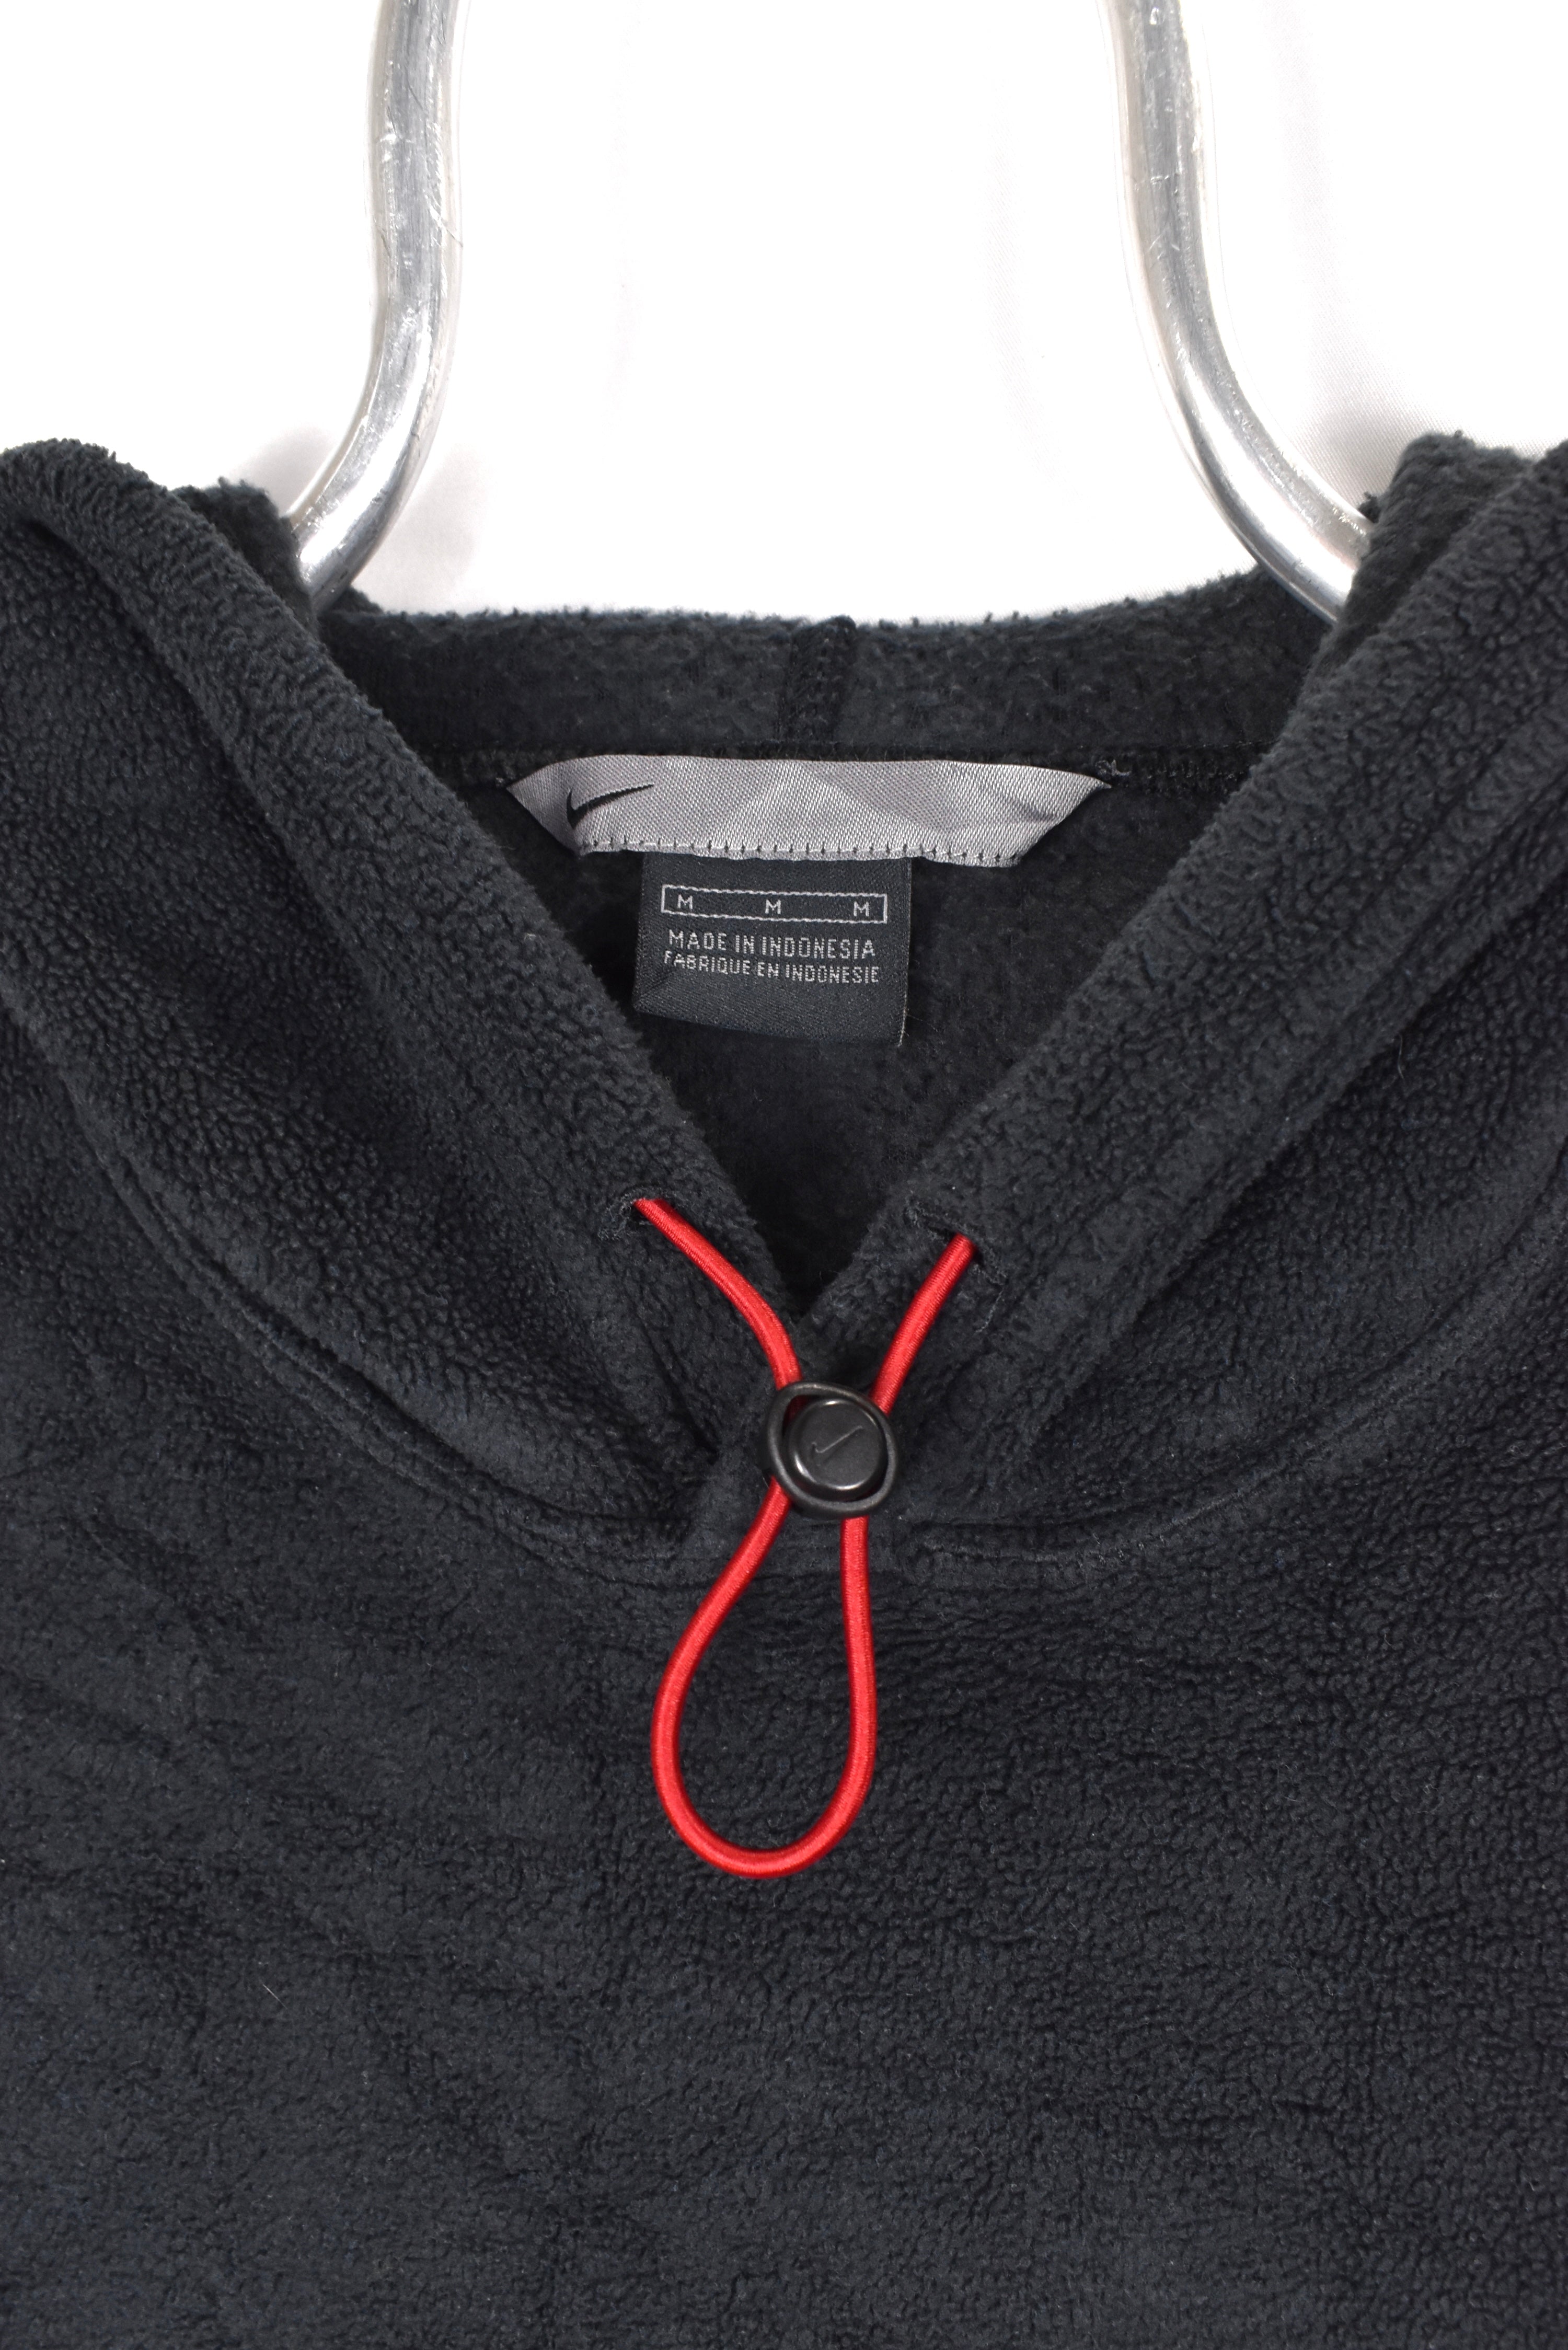 Vintage Nike hoodie, black embroidered fleece sweatshirt - AU Large NIKE